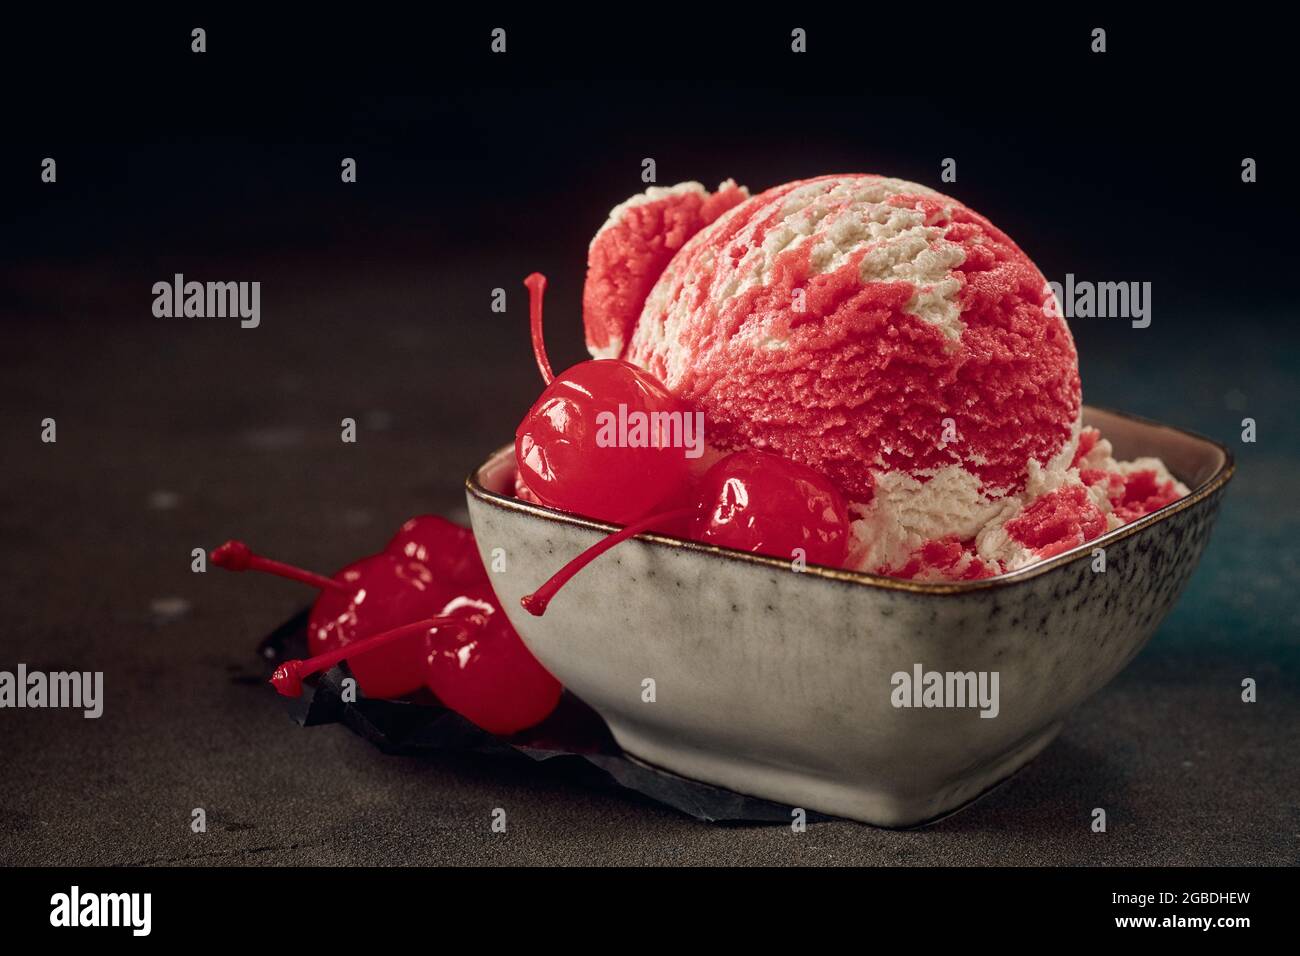 Porzione di paletta per gelato rosso con ciliegie dolci di maraschino in ciotola su fondo scuro Foto Stock